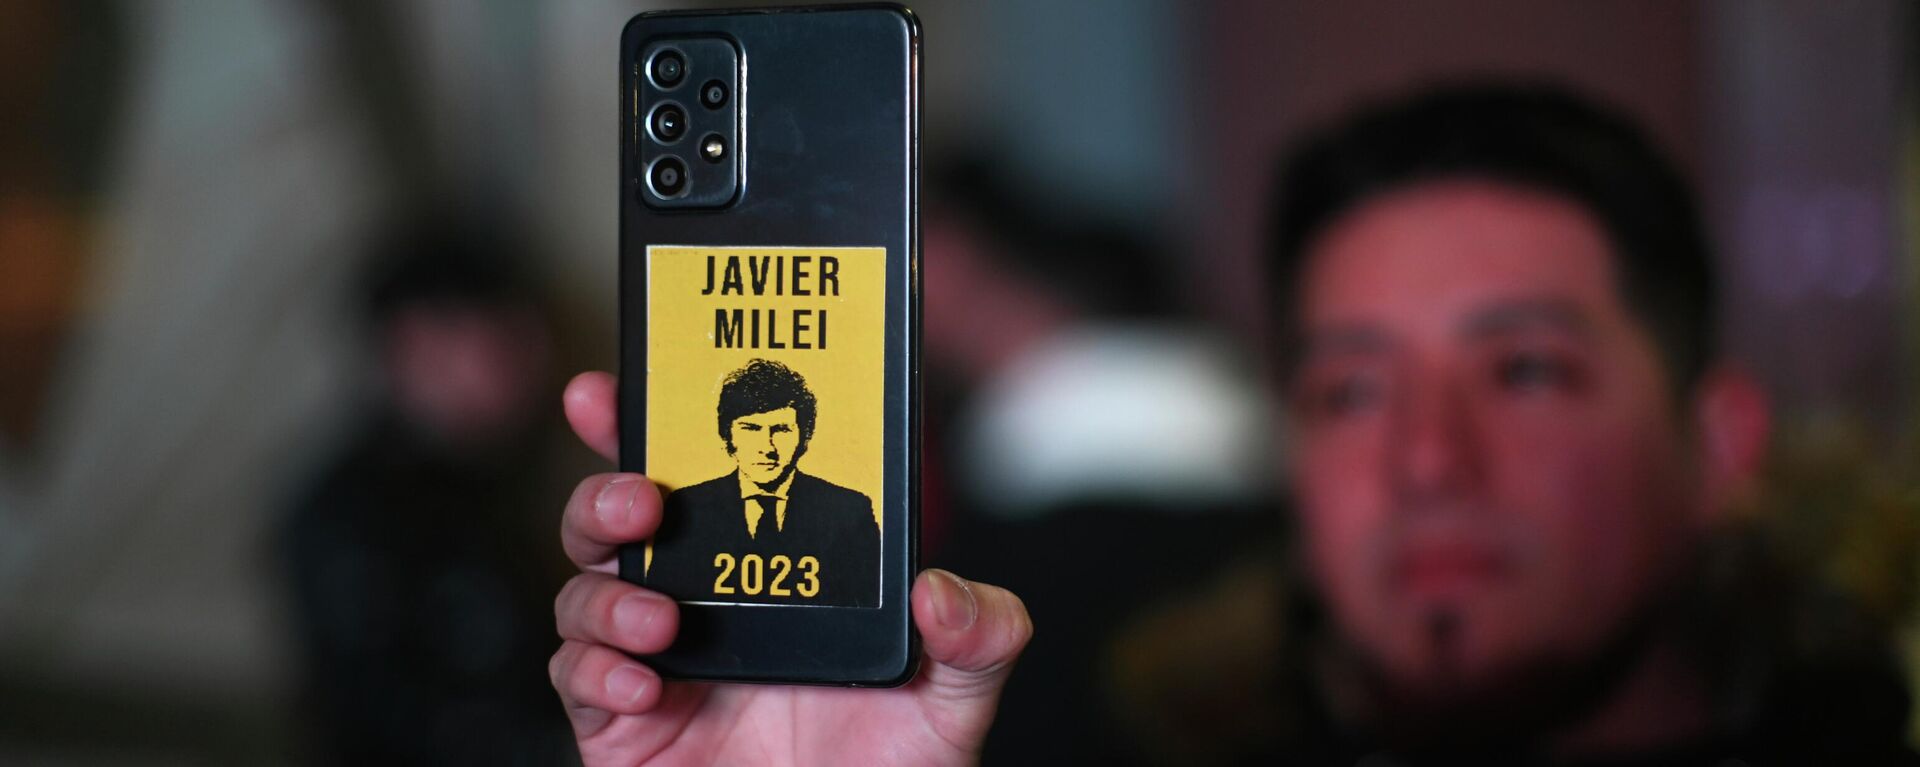 Javier Milei terminó como el candidato más votado en las primarias, con el 30,04% de las preferencias.  - Sputnik Mundo, 1920, 14.08.2023